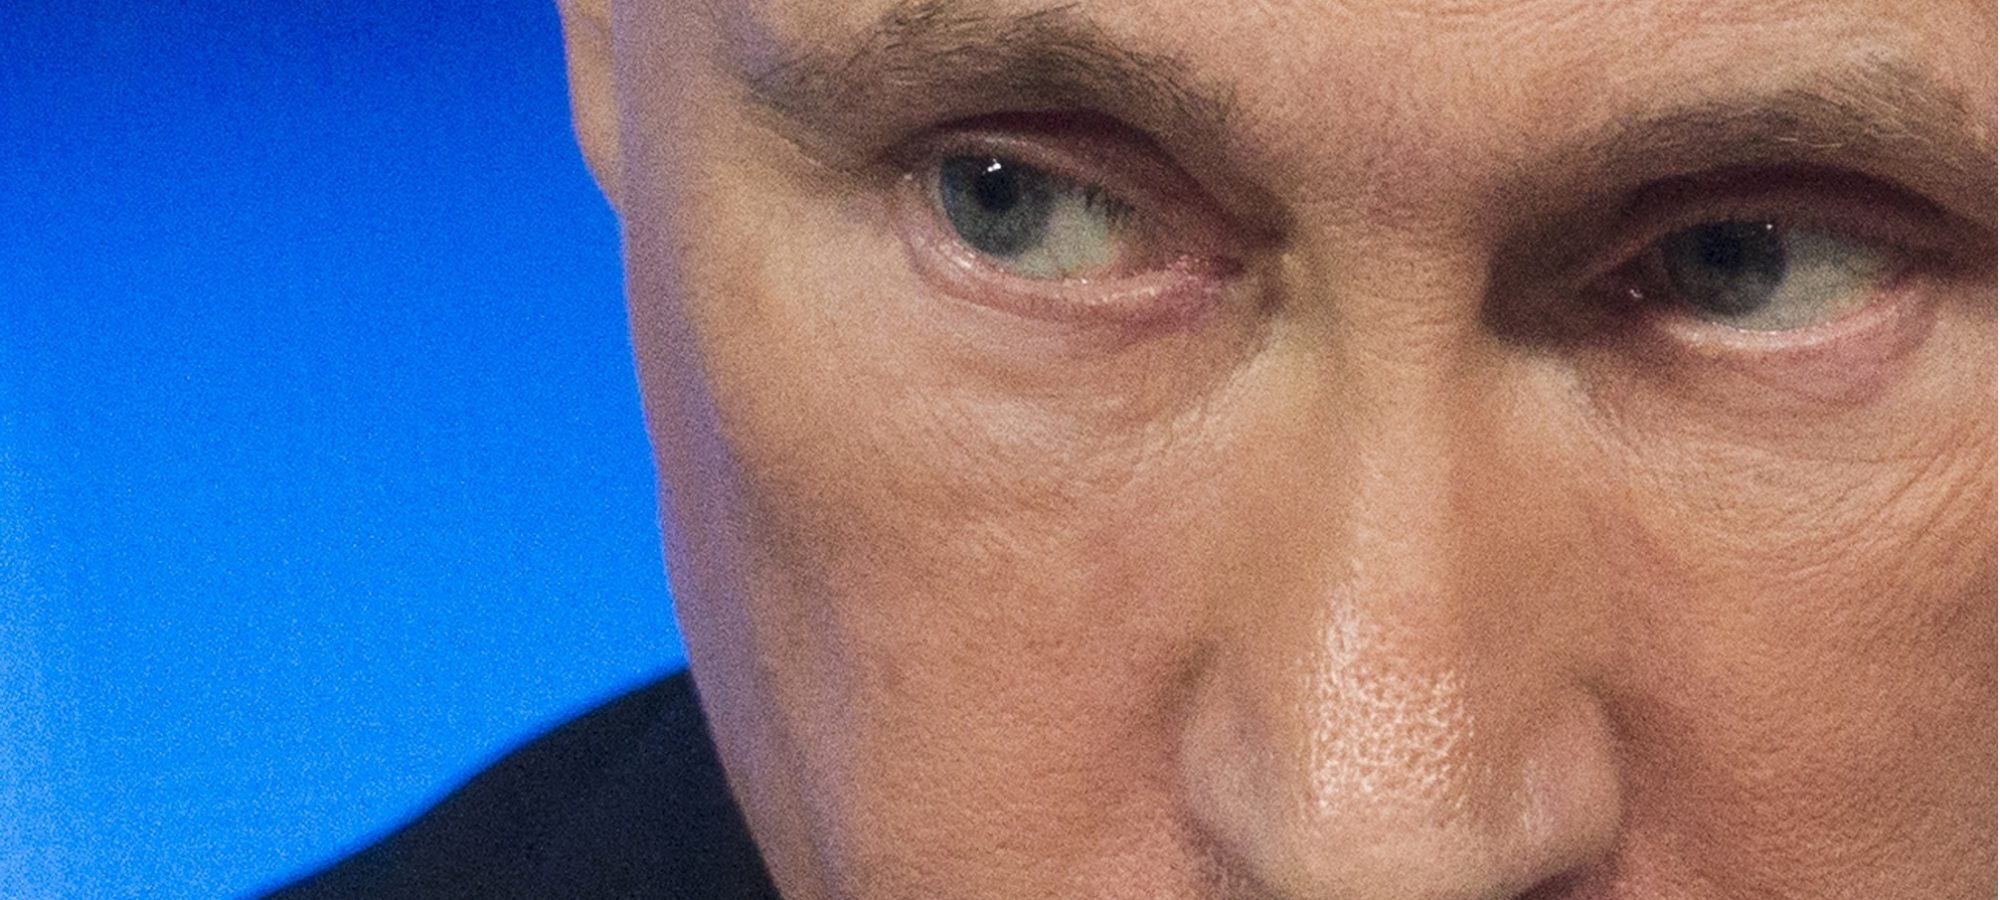 Putins Eyes